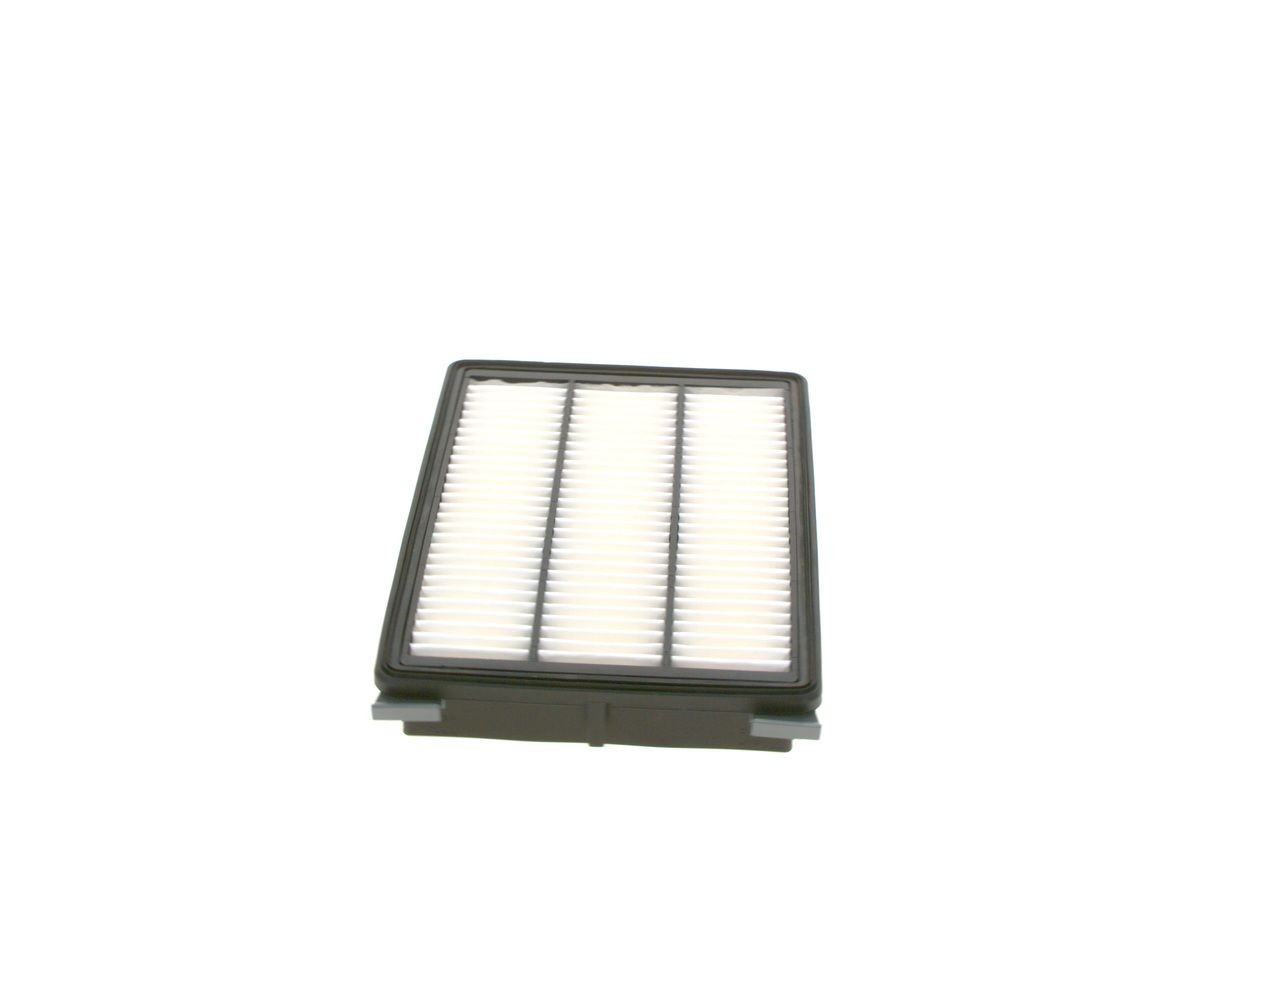 F026400185 Air filter S 0185 BOSCH 42mm, 198,5mm, 275,5mm, Filter Insert